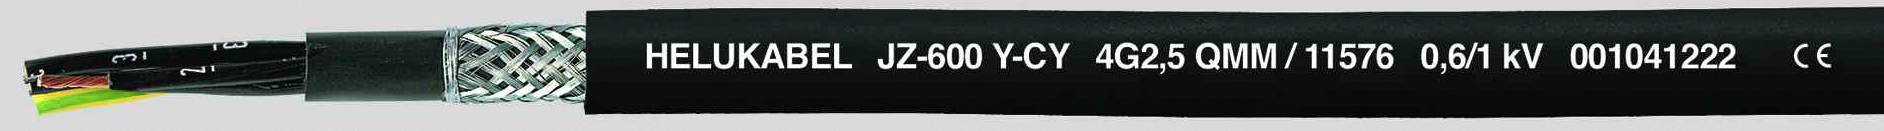 HELUKABEL JZ-600-Y-CY Steuerleitung 3 G 1.50 mm² Schwarz 11547-1000 1000 m